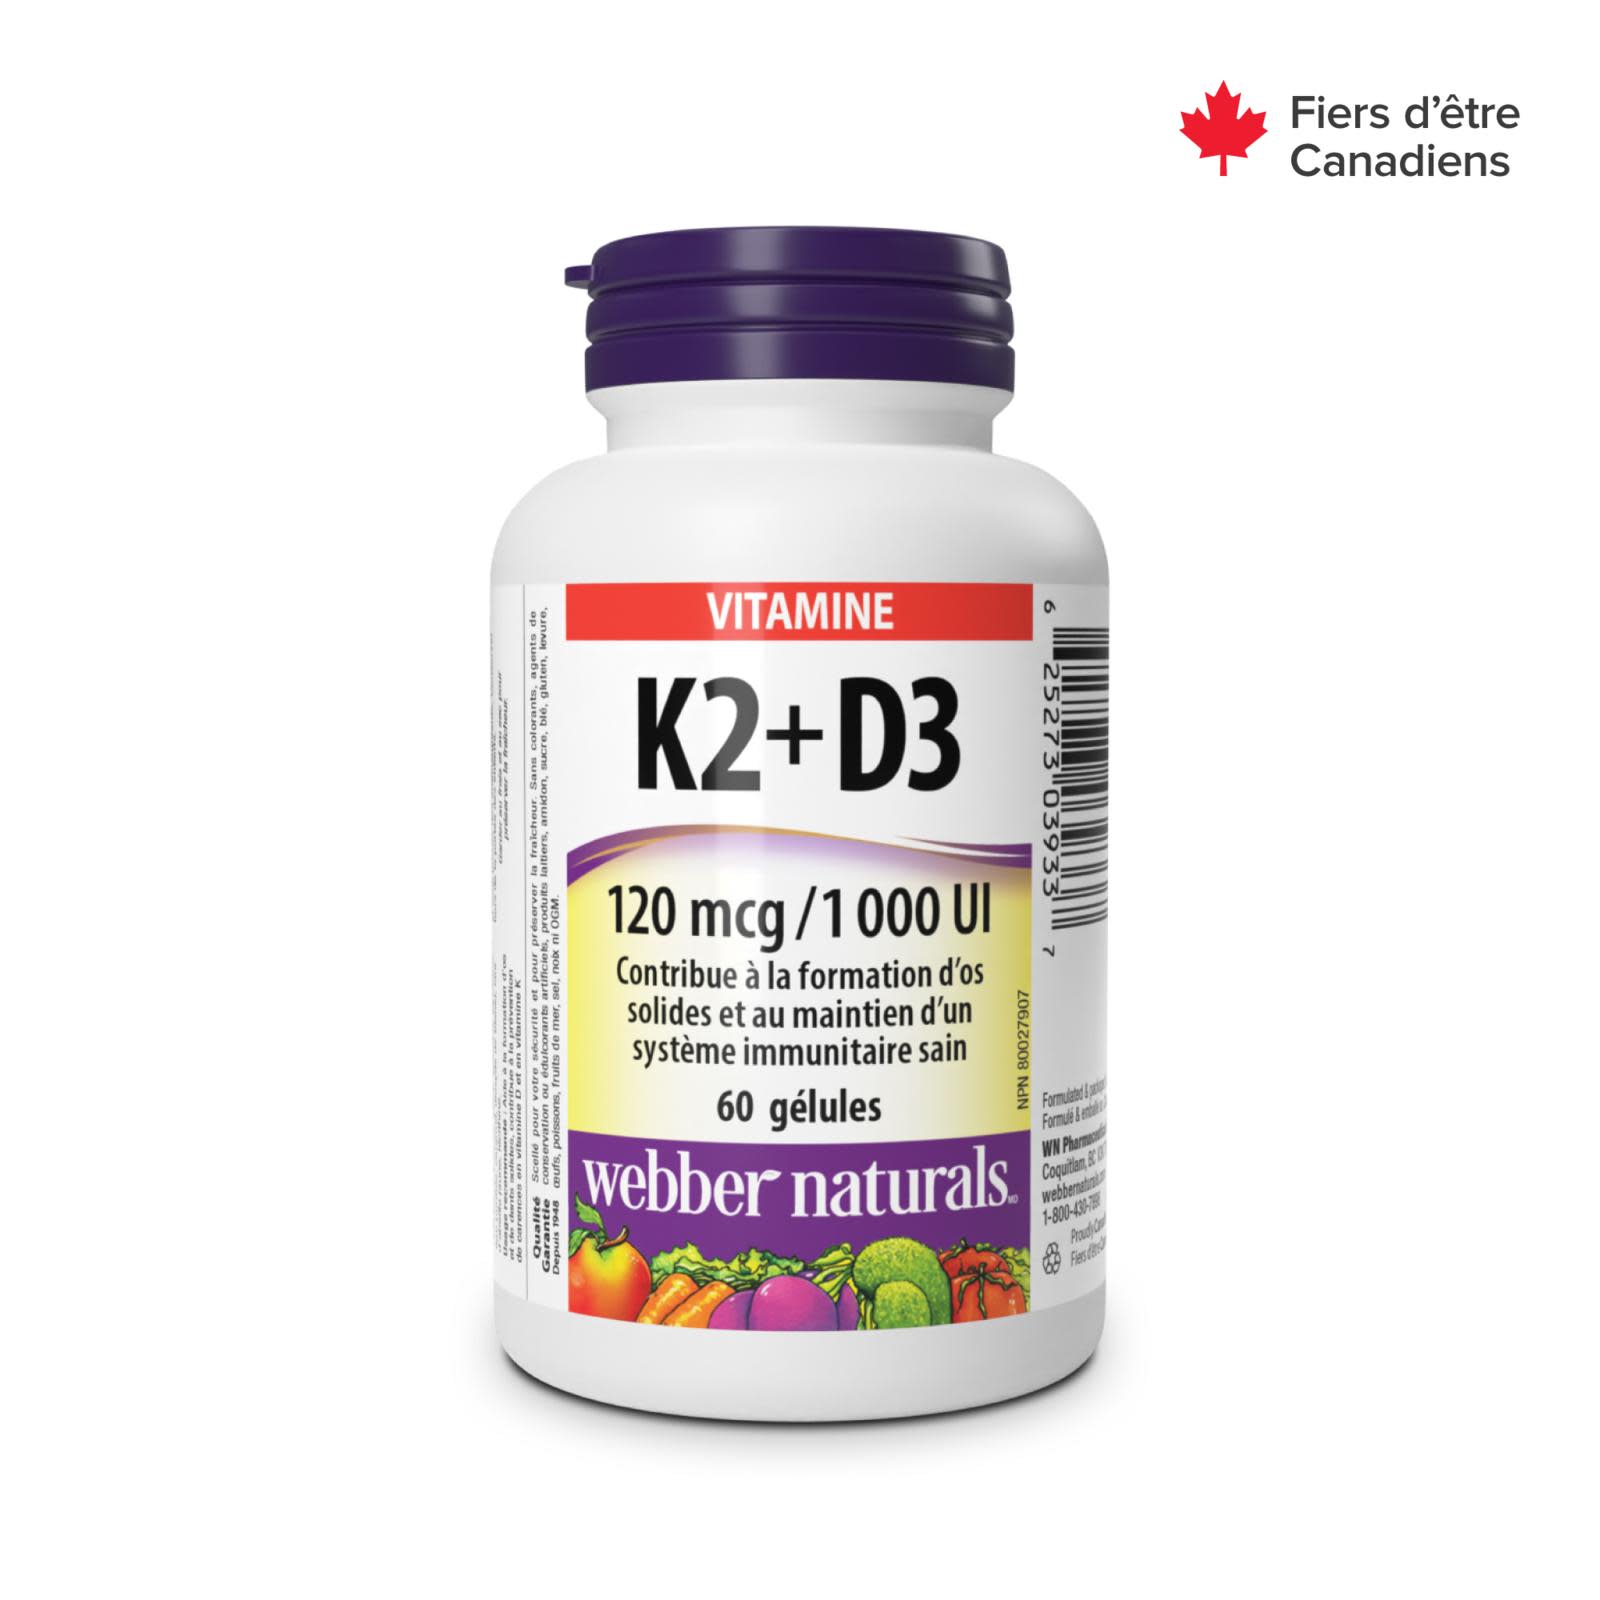 Vitamin K2+D3 120 mcg/1000 IU for Webber Naturals|v|hi-res|WN3933